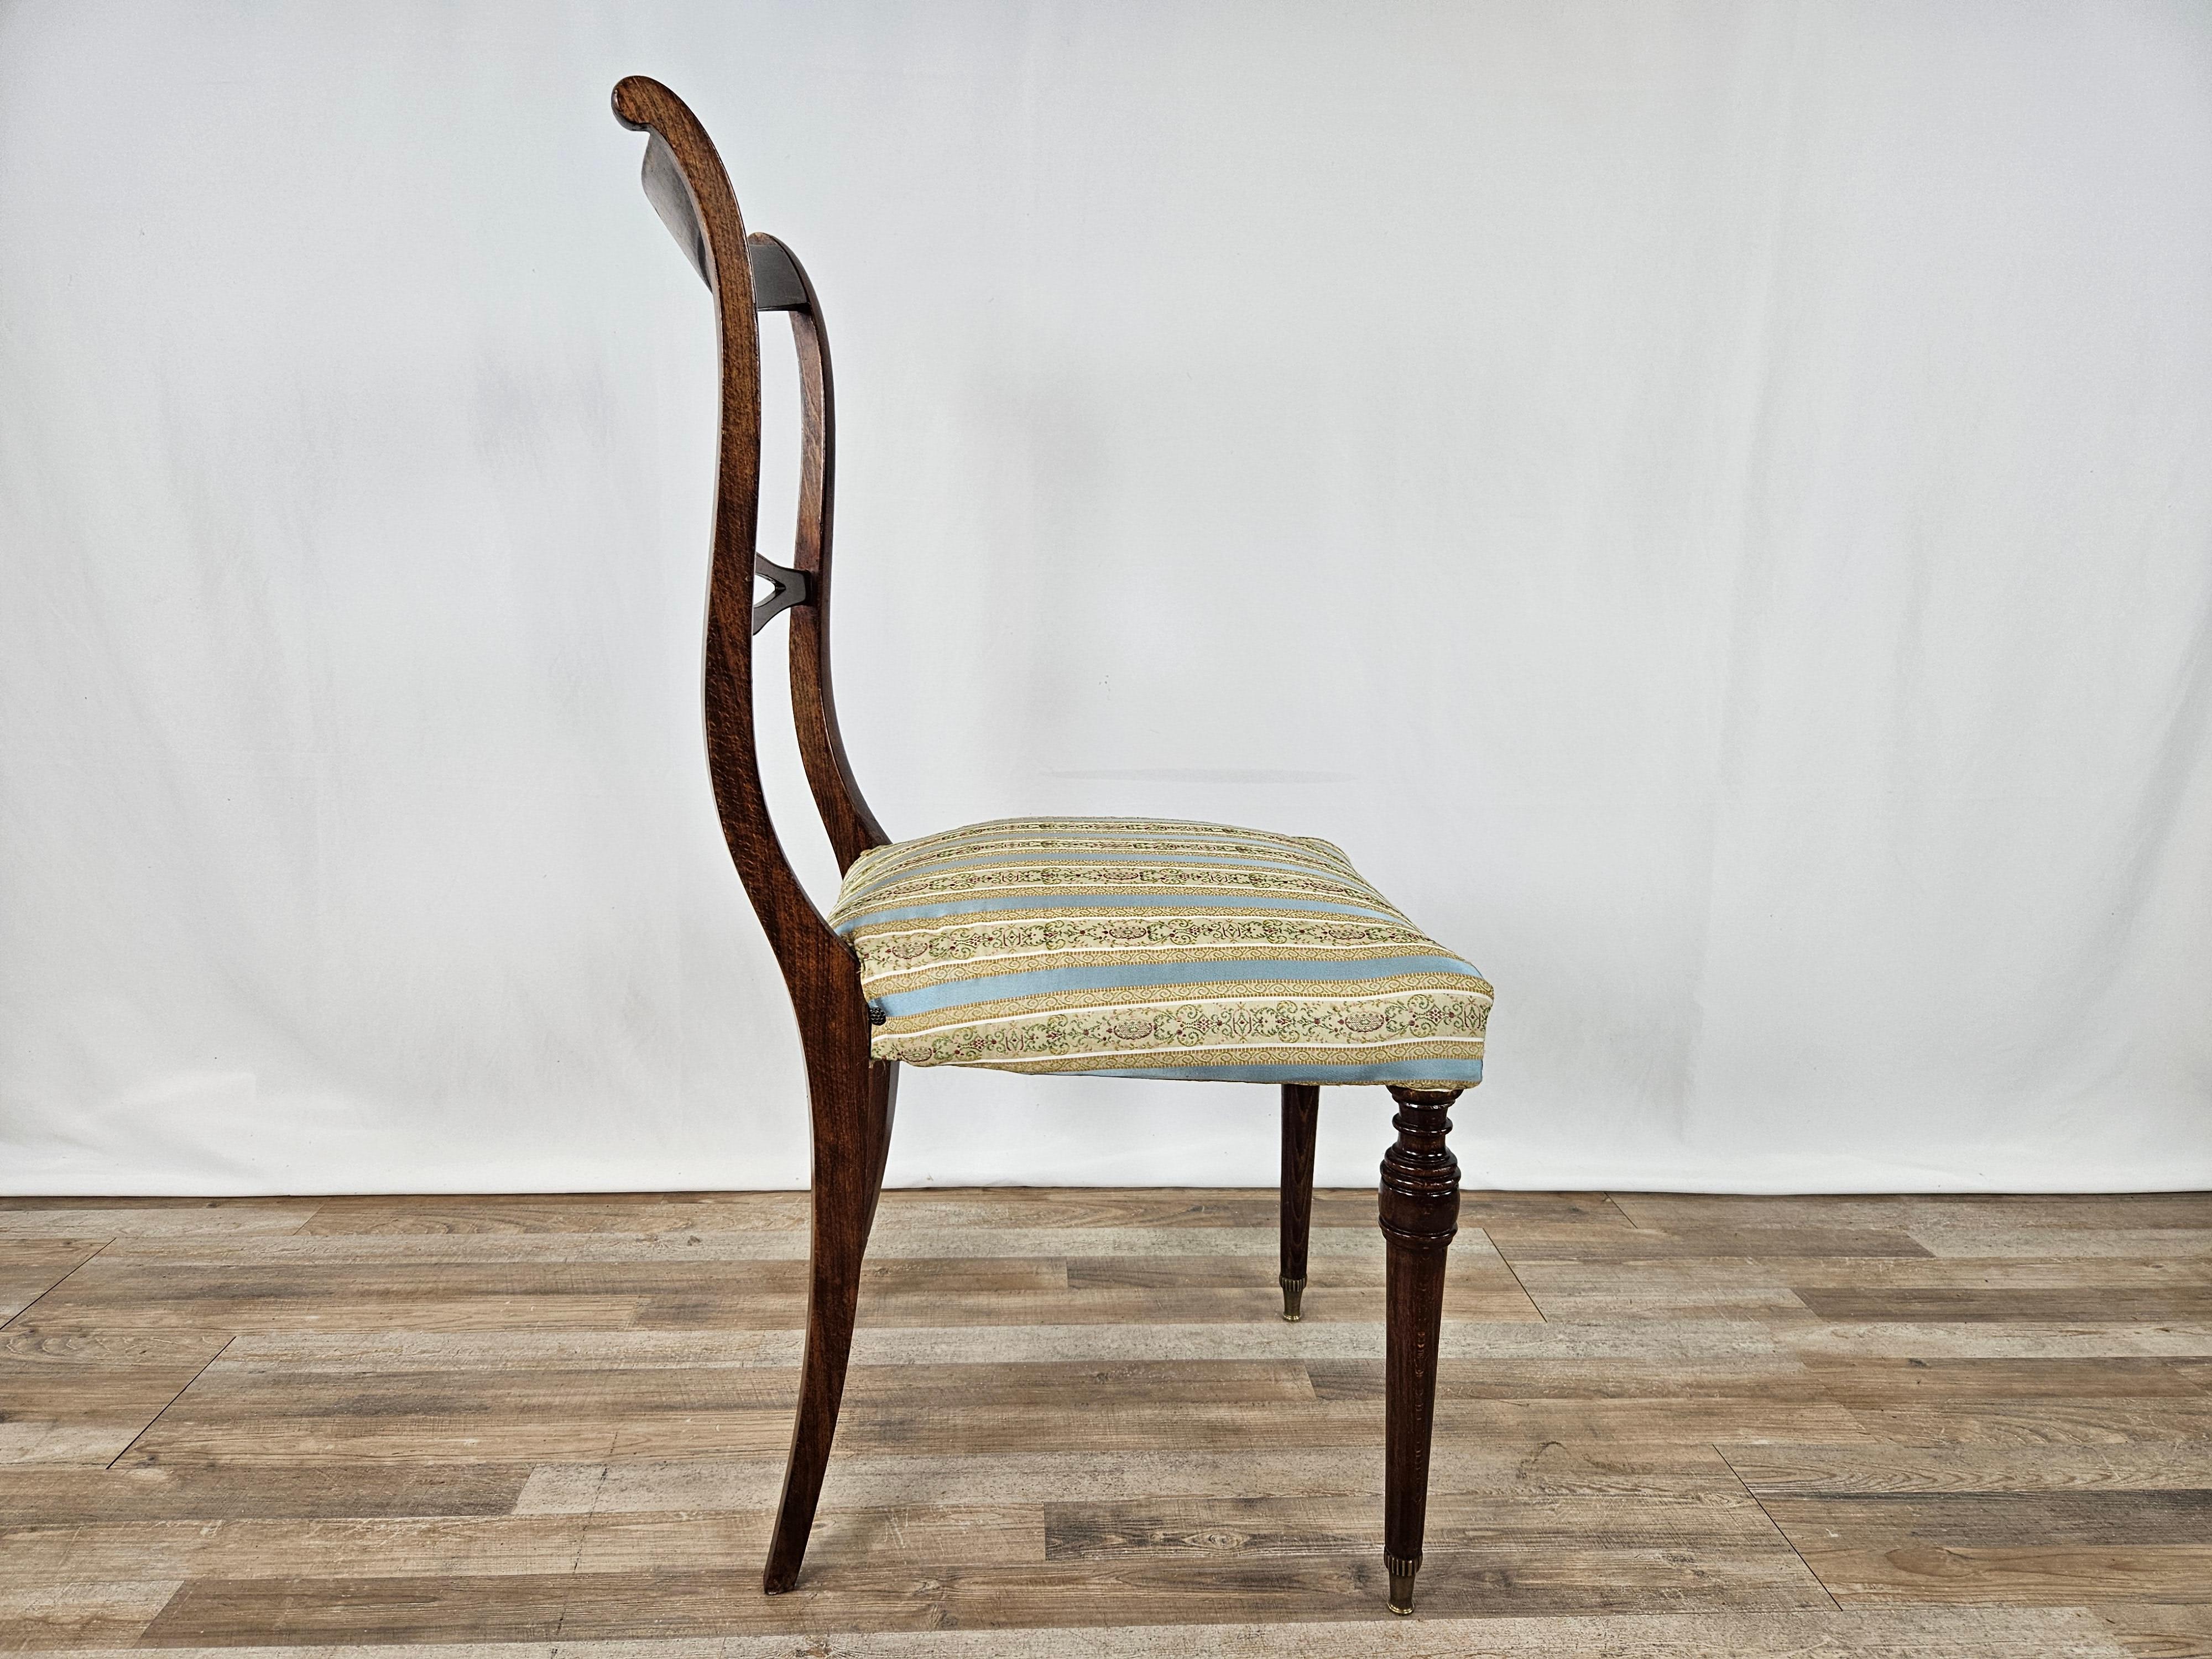 Elegante sedia in stile inglese per sala pranzo, produzione italiana di epoca 1960 circa.

Si presenta solida e robusta con struttura in legno di noce e seduta imbottita in tessuto originale dell'epoca. 

Particolari puntalini dei piedi anteriori in